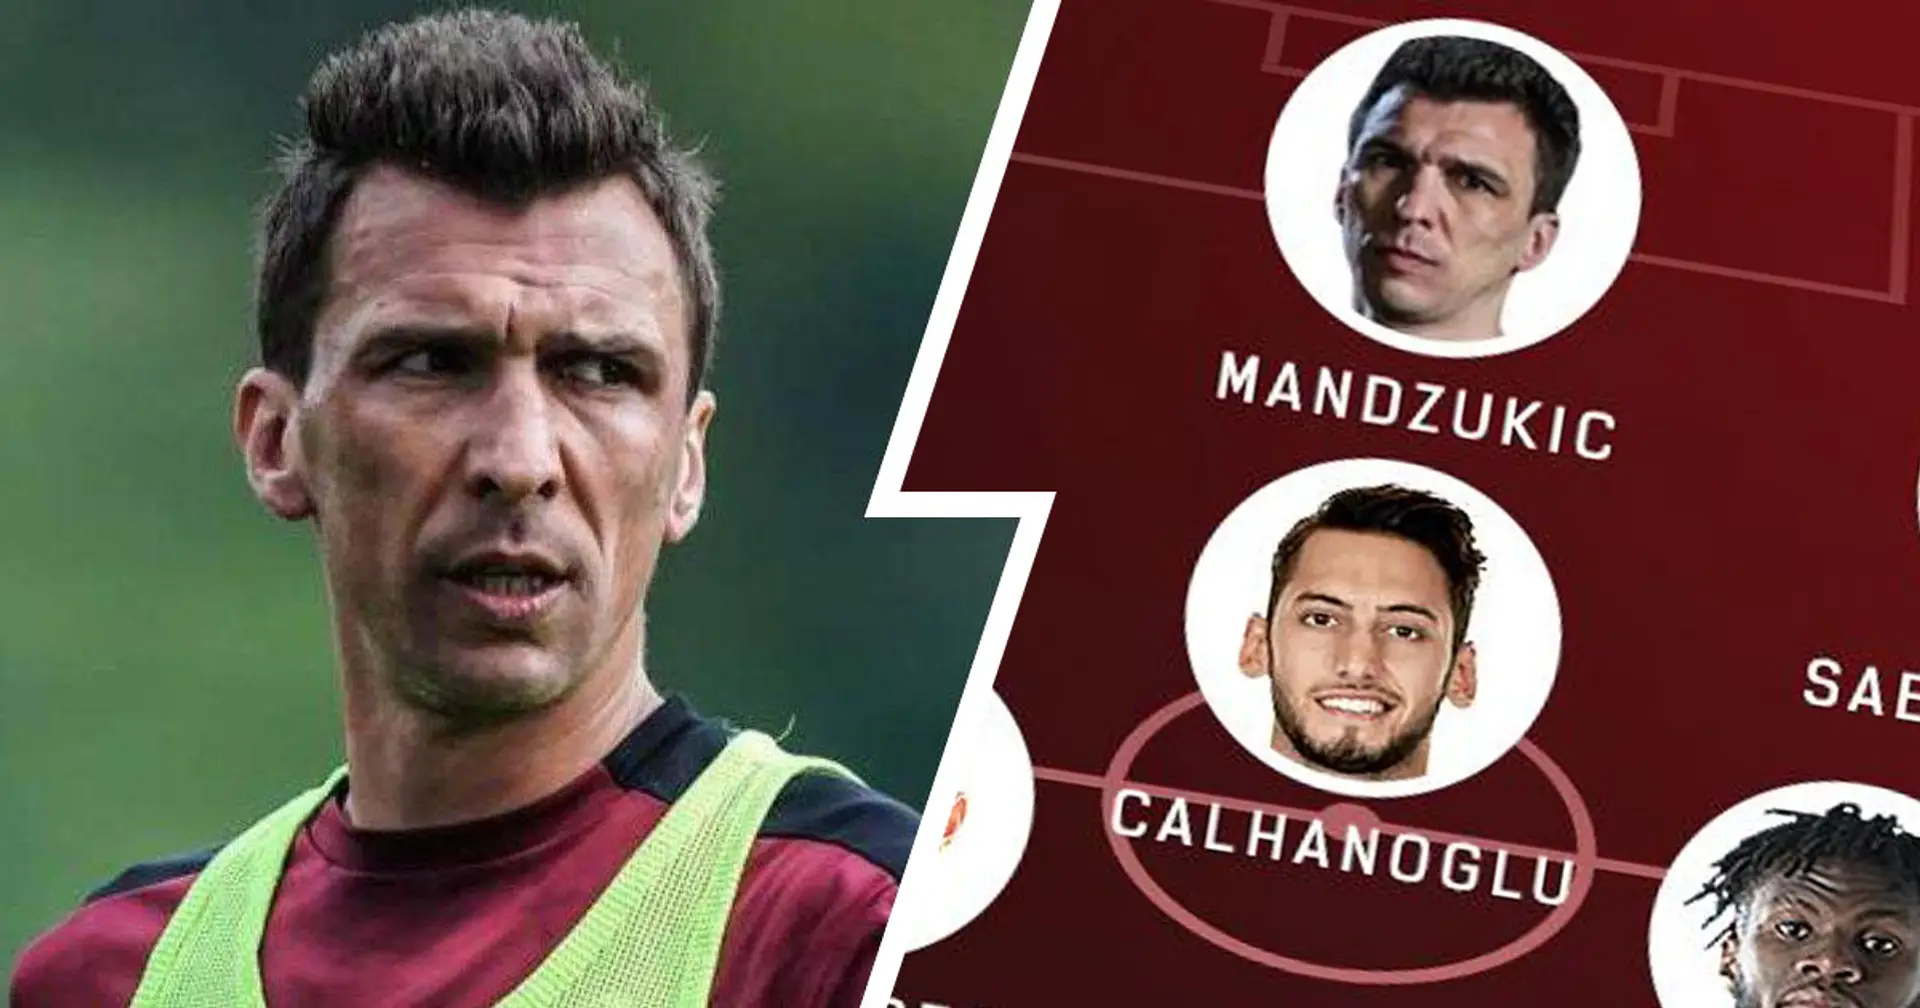 Plebiscito per Mandzukic titolare: i tifosi del Milan hanno scelto l'XI ideale per battere l'Atalanta